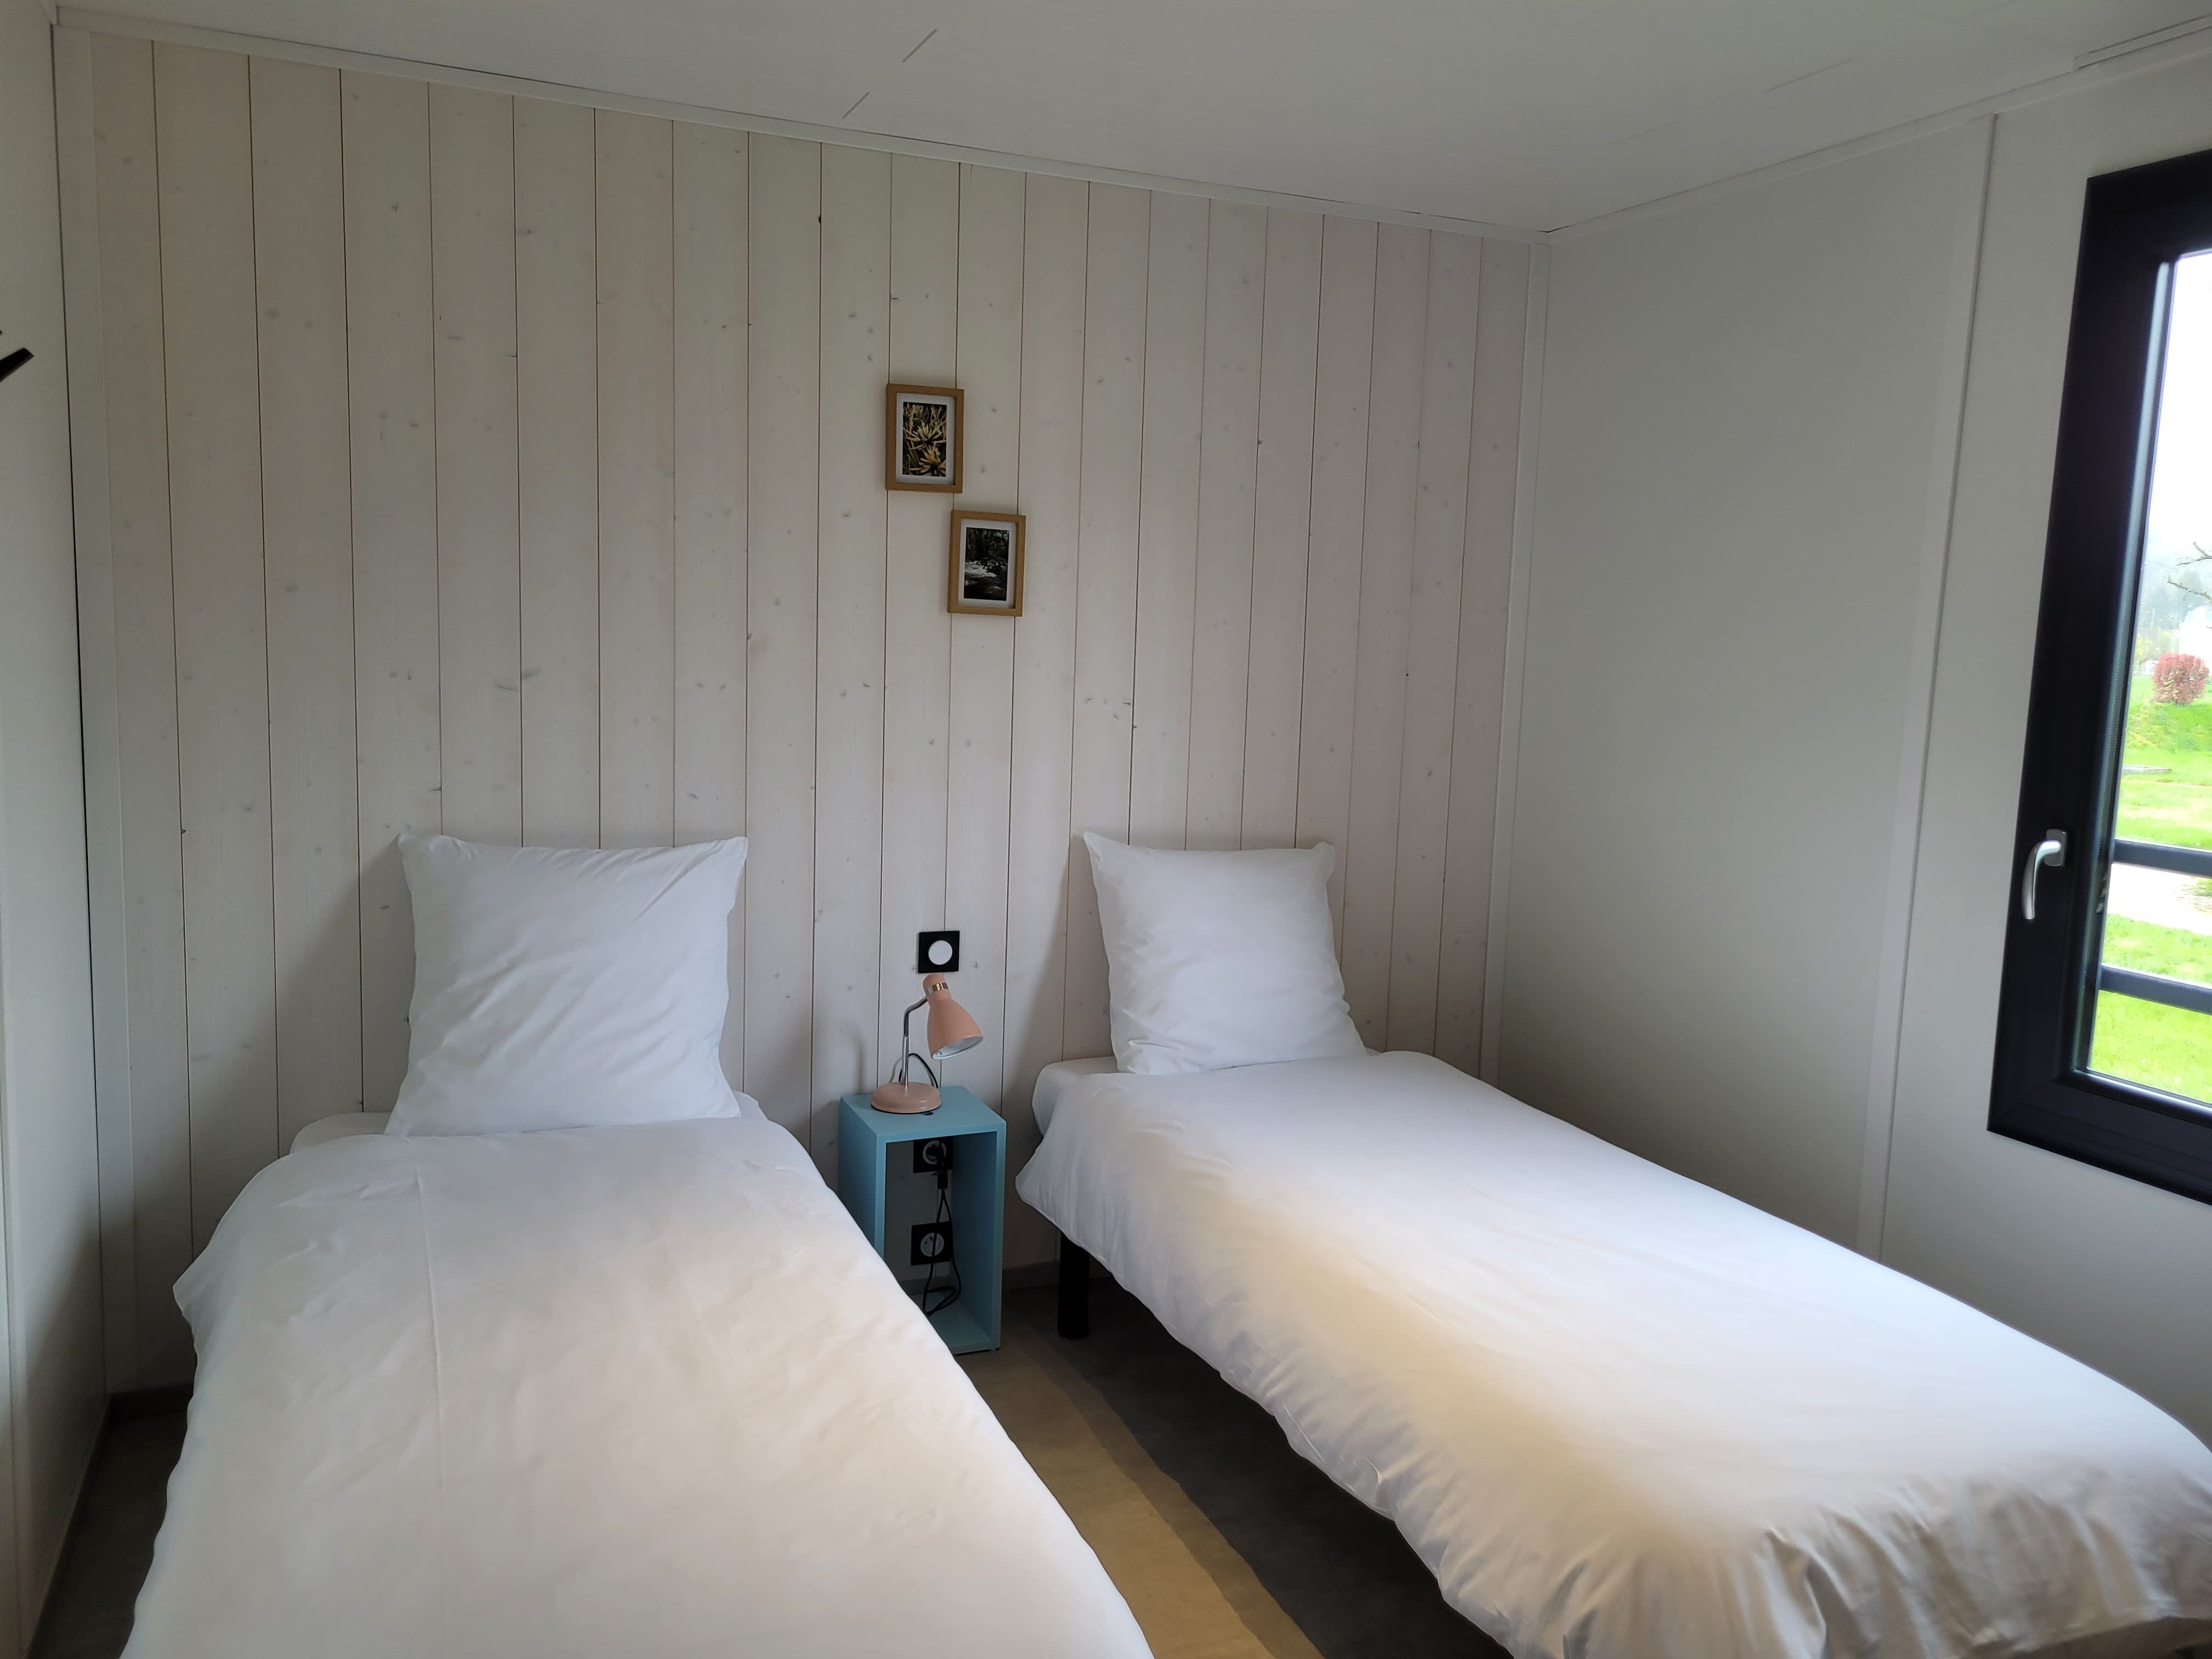 Deux lits confortables dans une chambre avec vue sur la campagne verdoyante de la Dordogne Périgord.